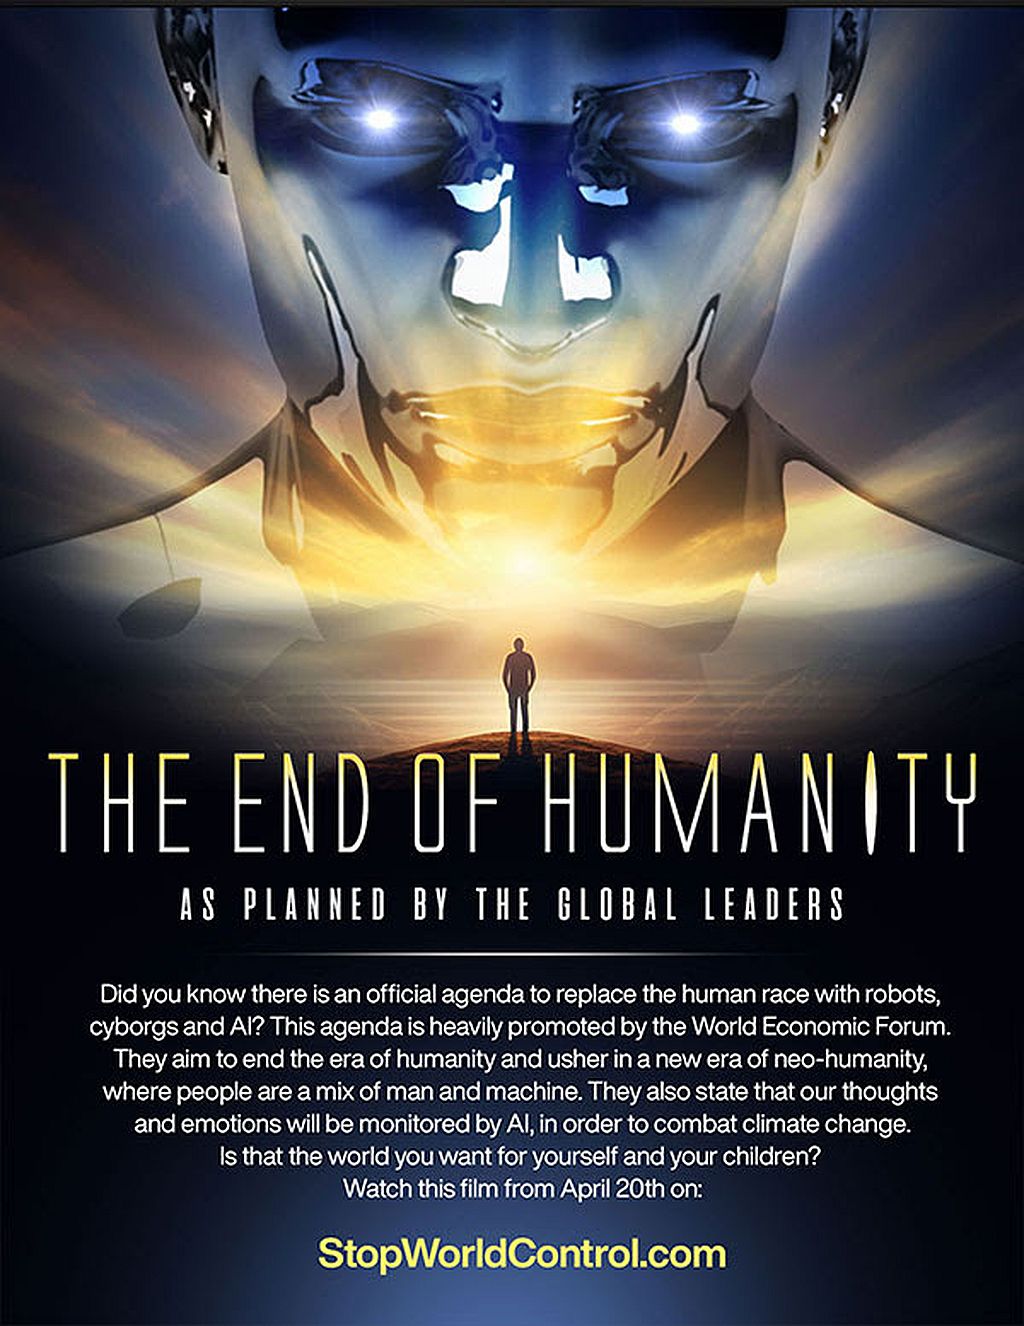 Das Ende der Menschlichkeit - Wie von den globalen Führern geplant